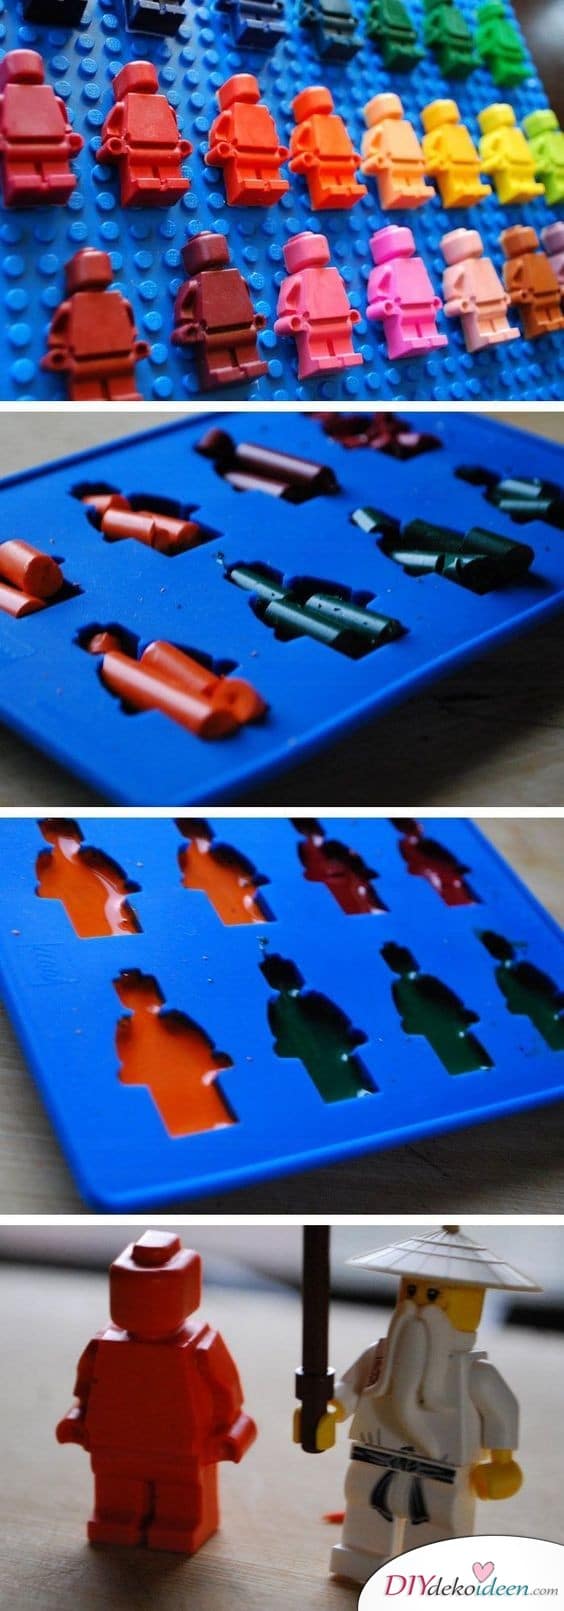 Lego-Wachsmalkreiden – tolle Geschenke für Kinder